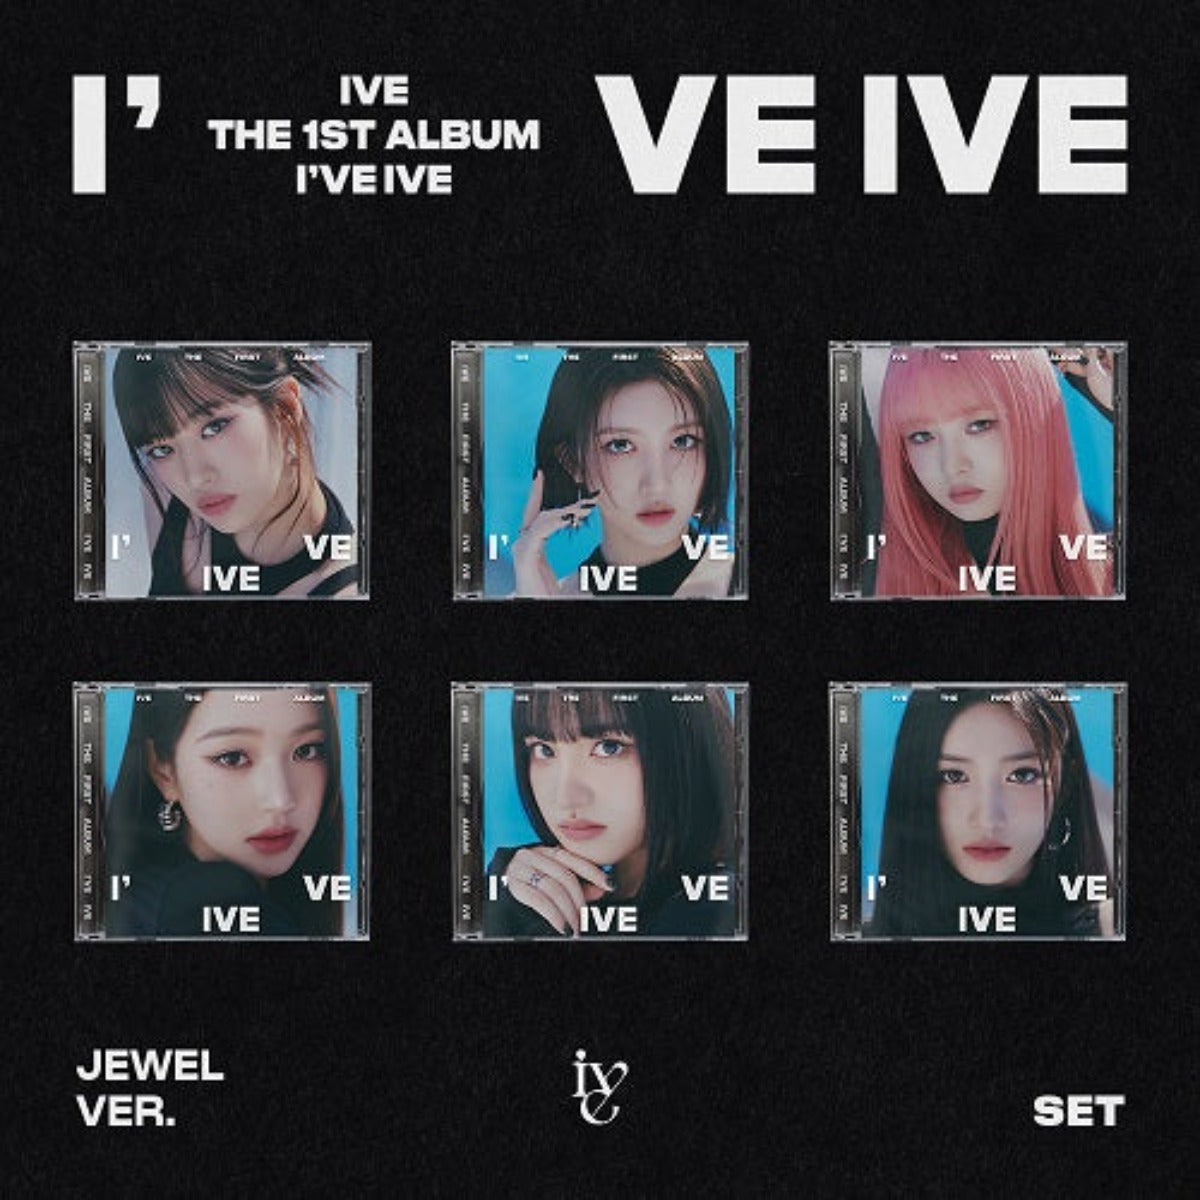 IVE Vol. 1 - I've IVE (Jewel Version) (Limited Edition) (Random Version)